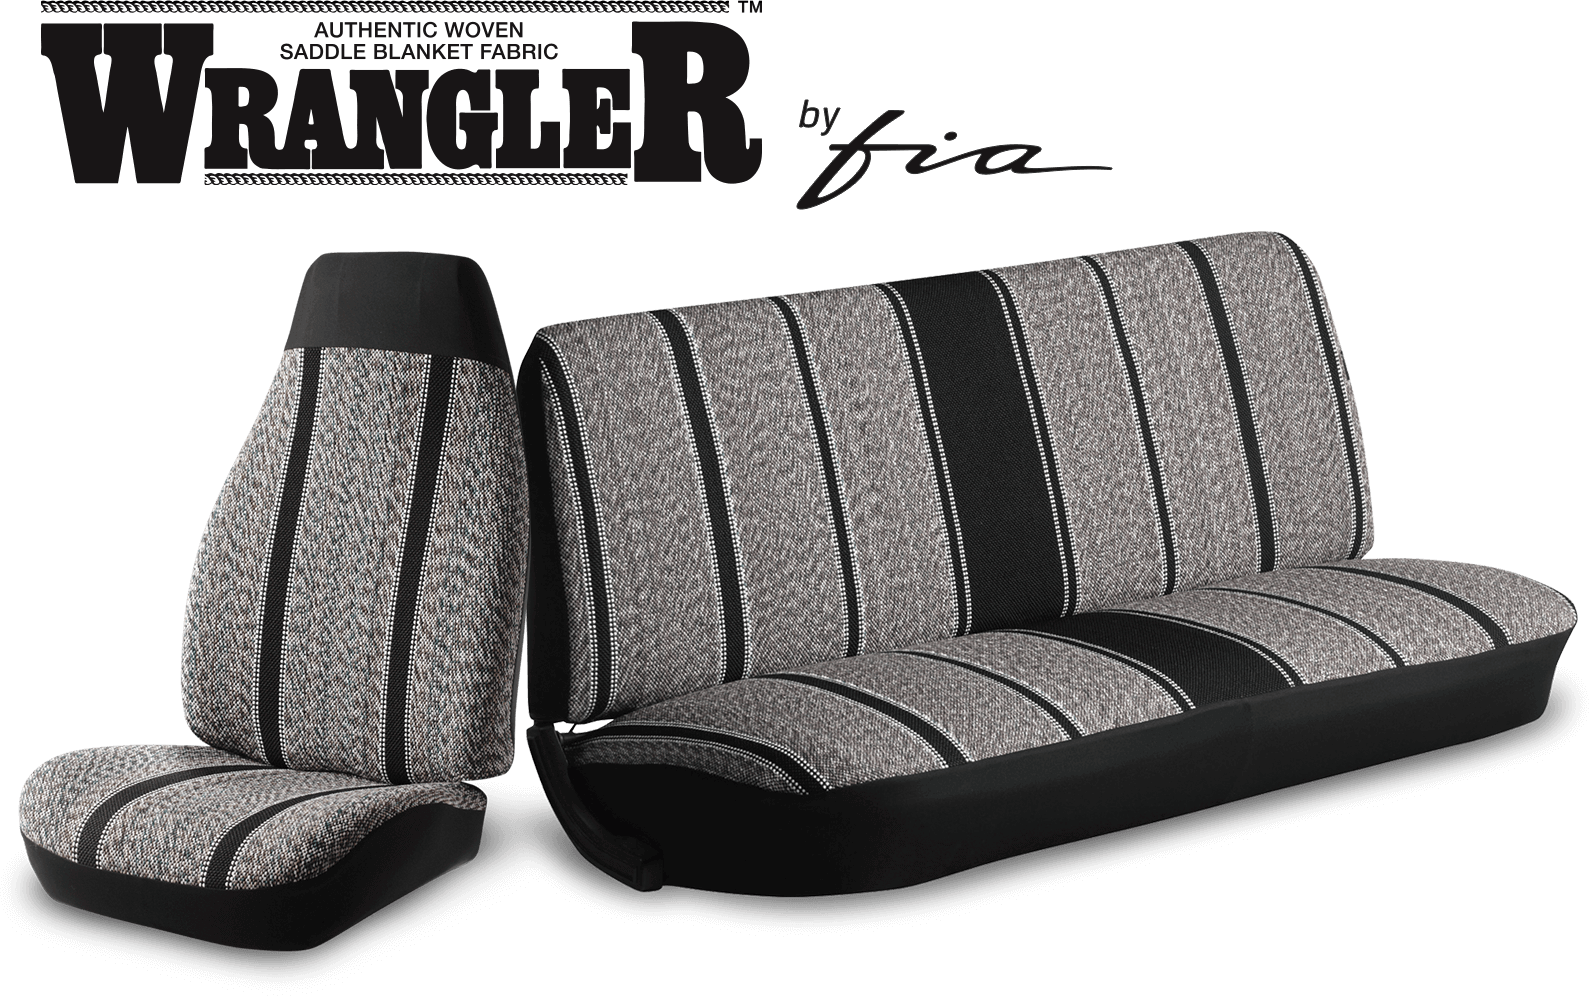 Wrangler Saddle Blanket Seat Covers For Trucks